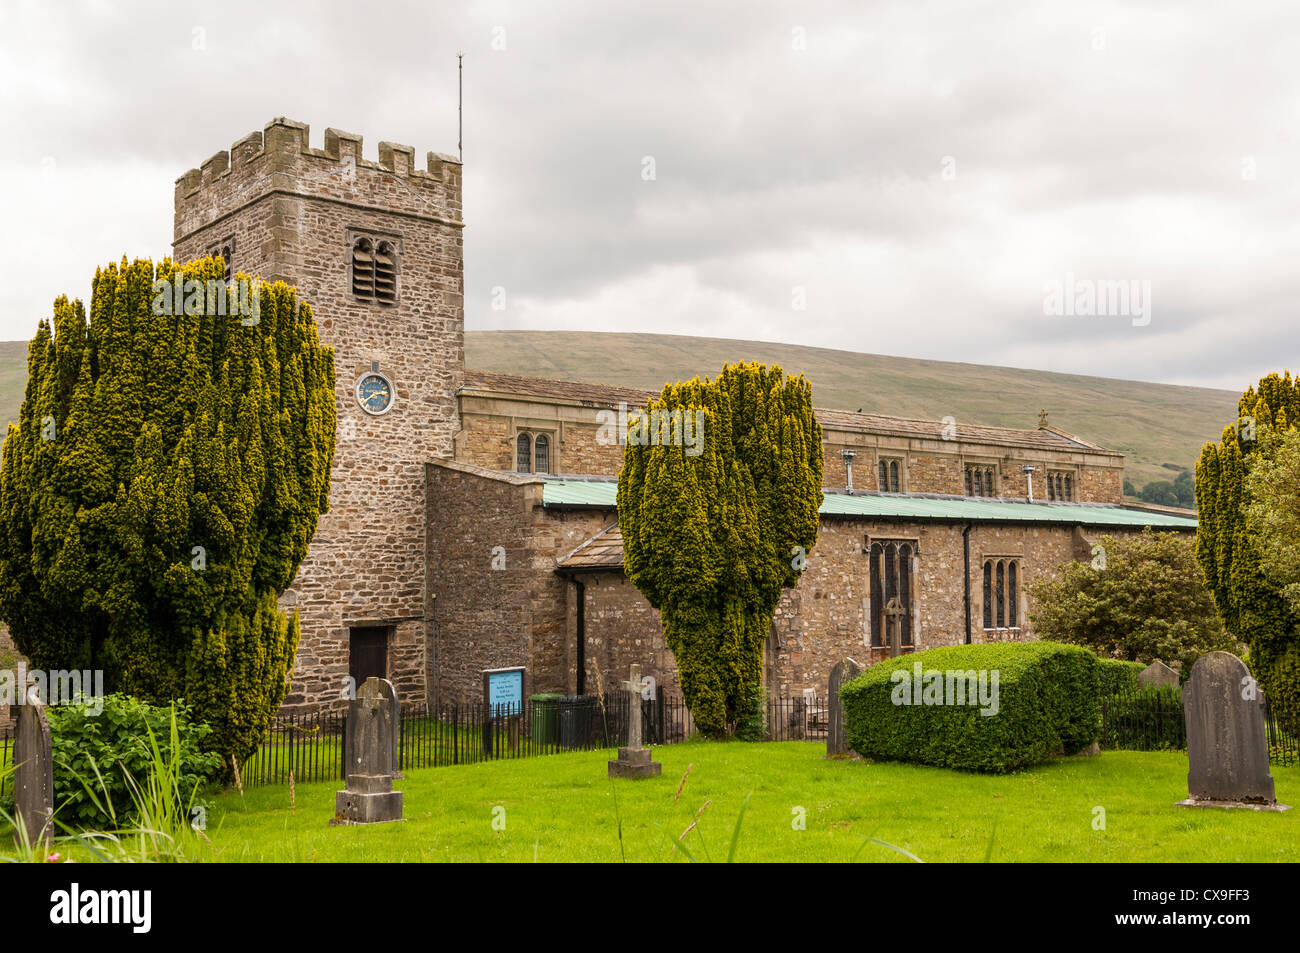 Die Kirche des Hl. Andreas in Dent, Cumbria, England, Großbritannien, Uk Stockfoto